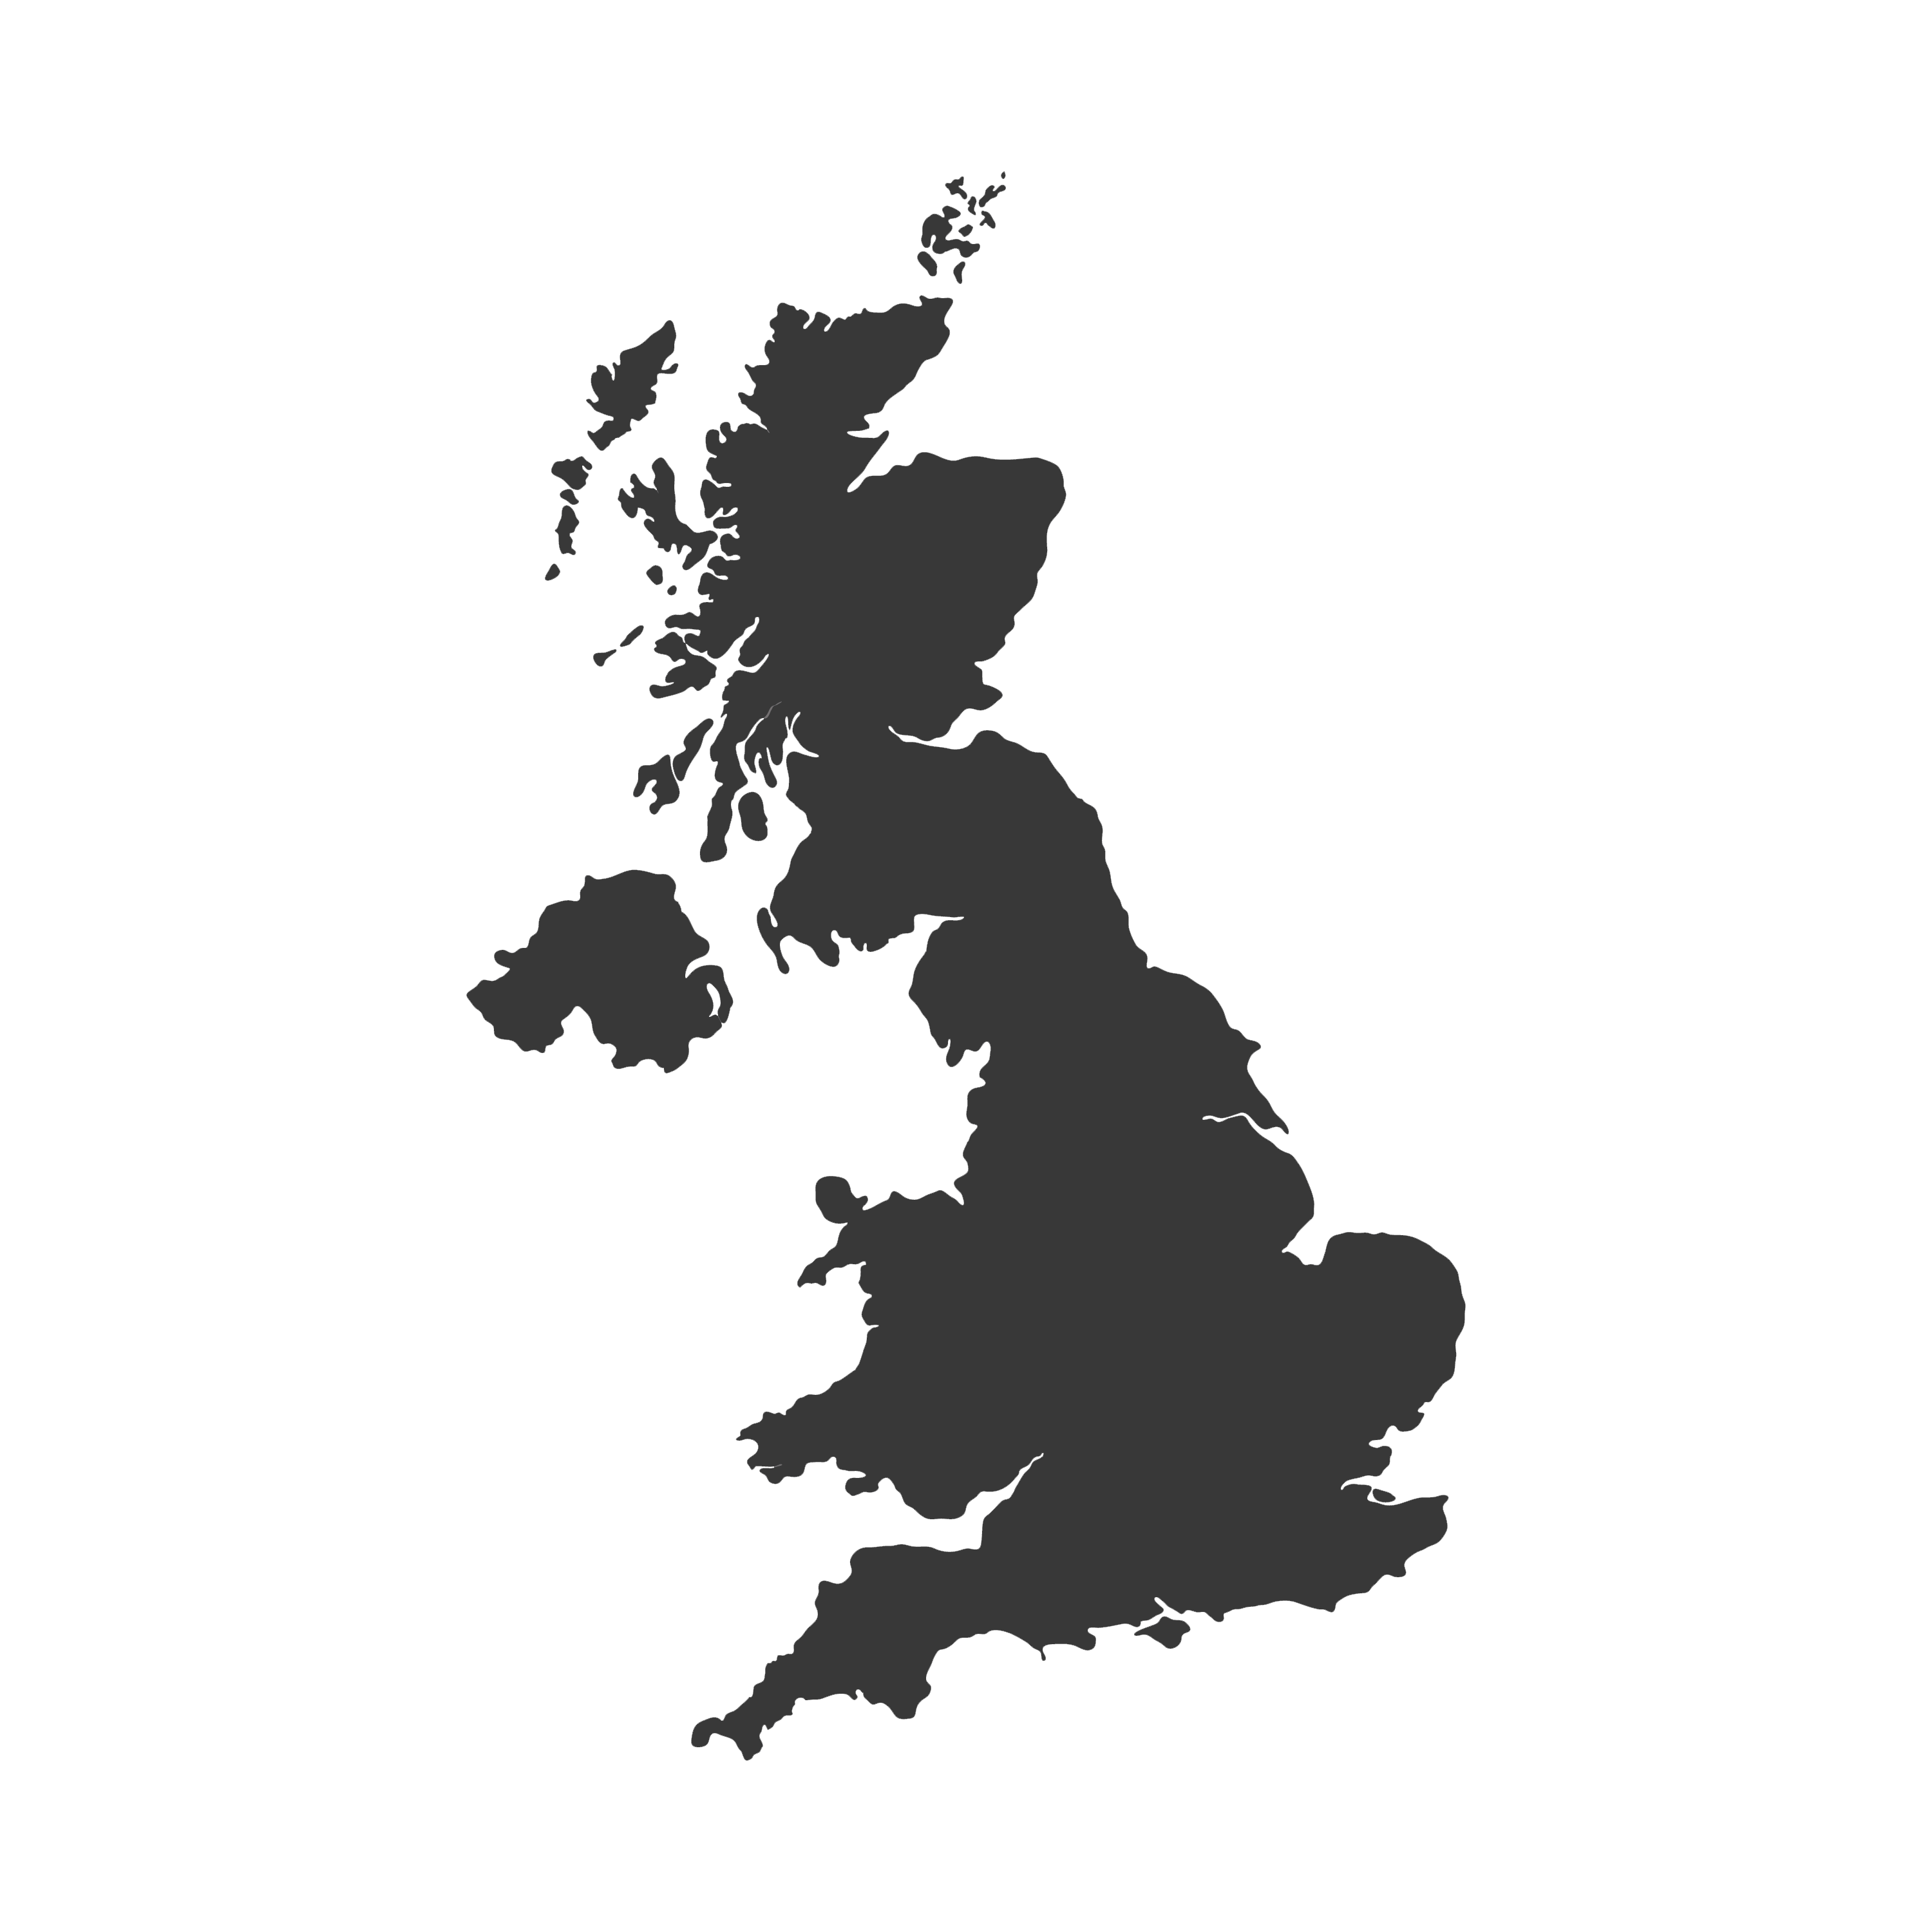 UK borders map